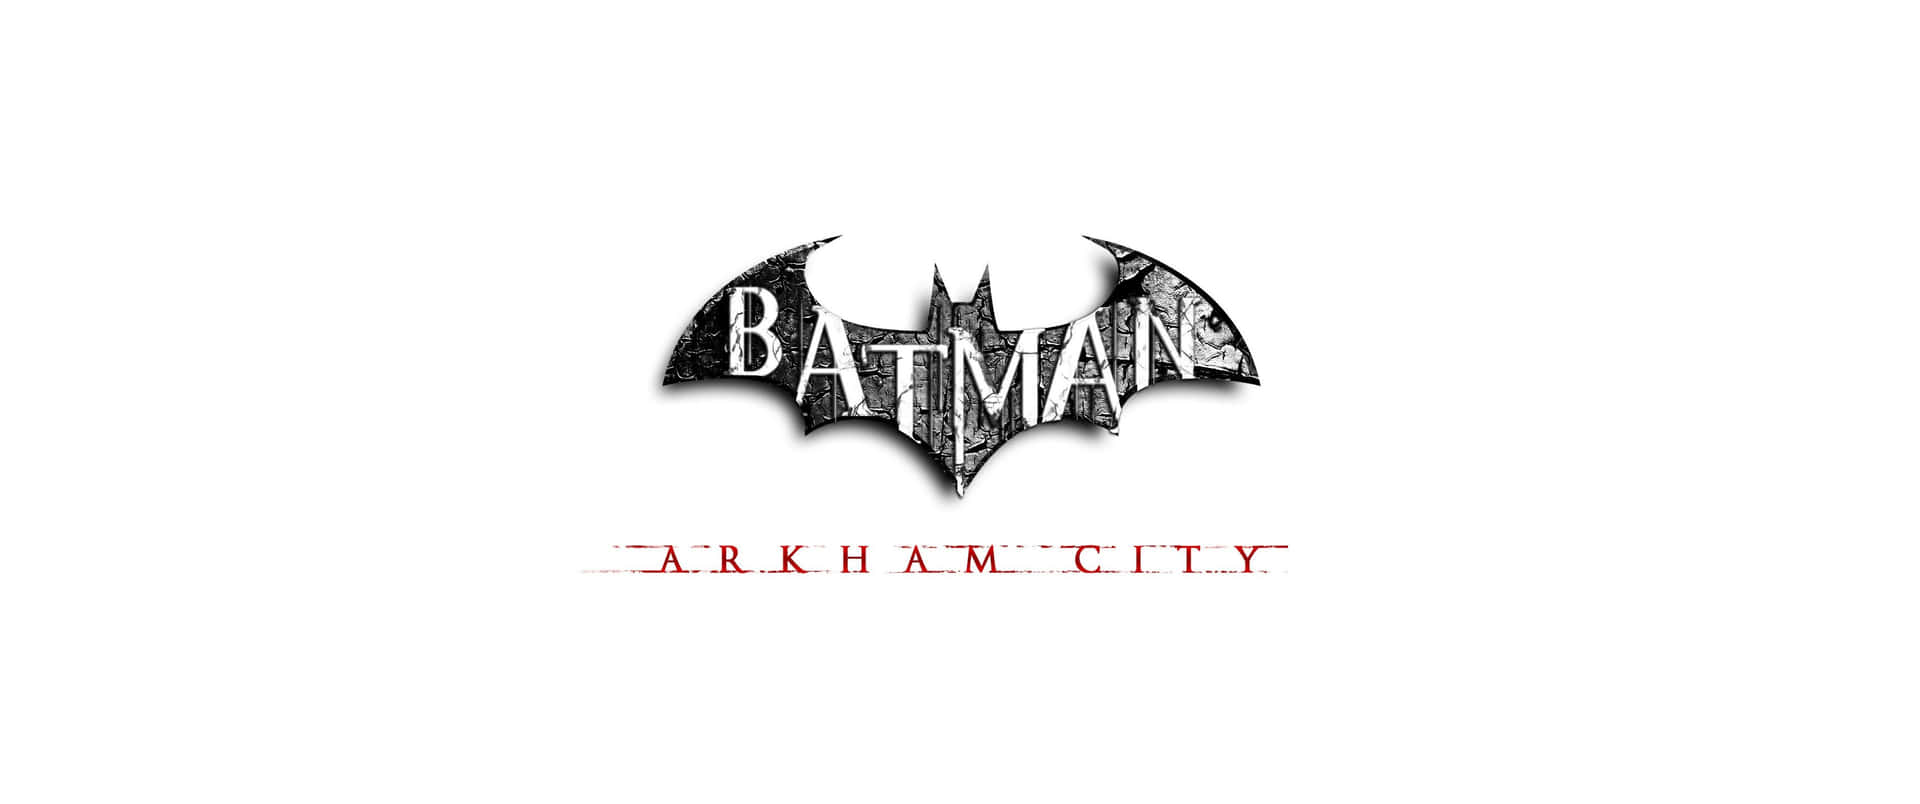 Batmanstår Högst Upp På Ett Tak I Arkham City.